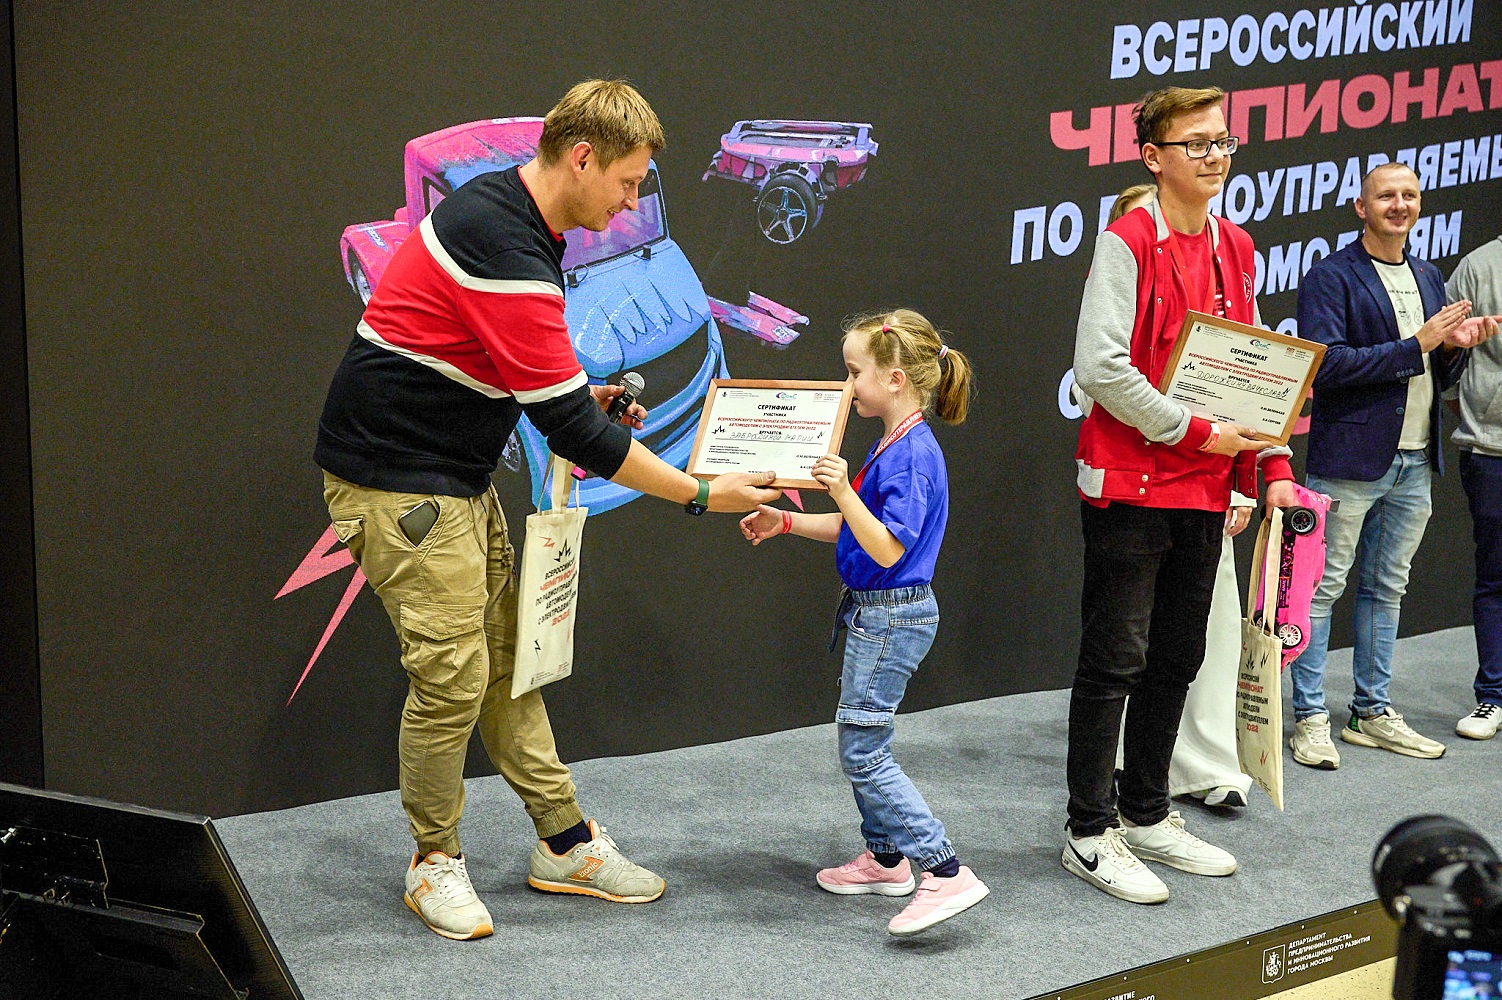 Москва впервые провела Всероссийский молодежный чемпионат по радиоуправляемым моделям - фото 8